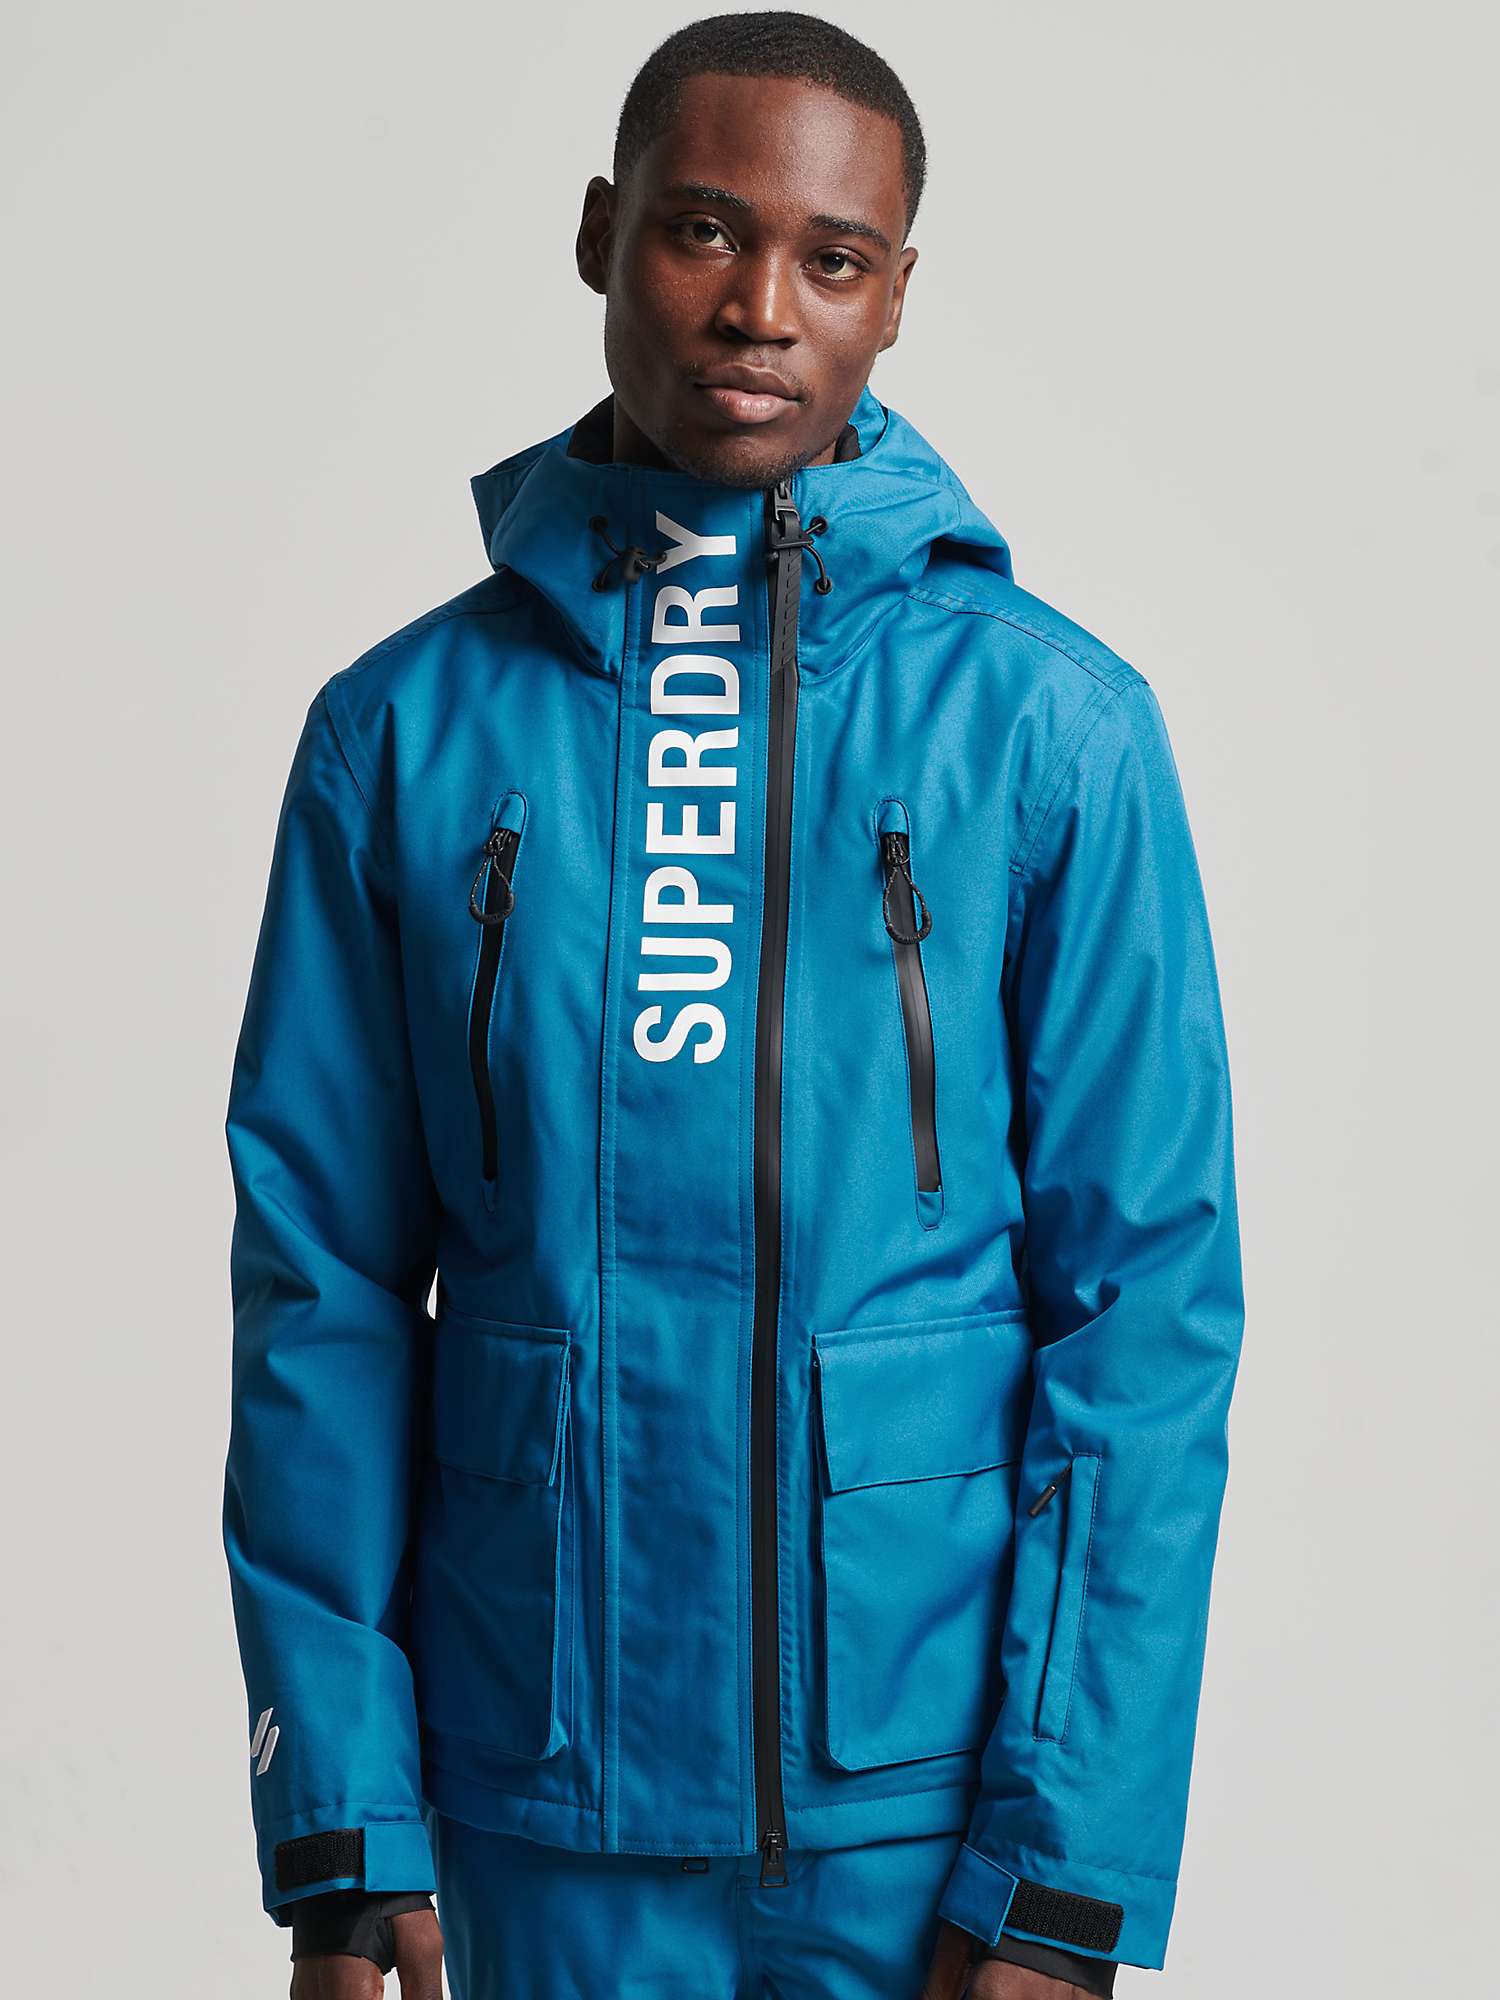 emmer gewoon Madeliefje Superdry Rescue Men's Ski Jacket, Twilight Blue at John Lewis & Partners